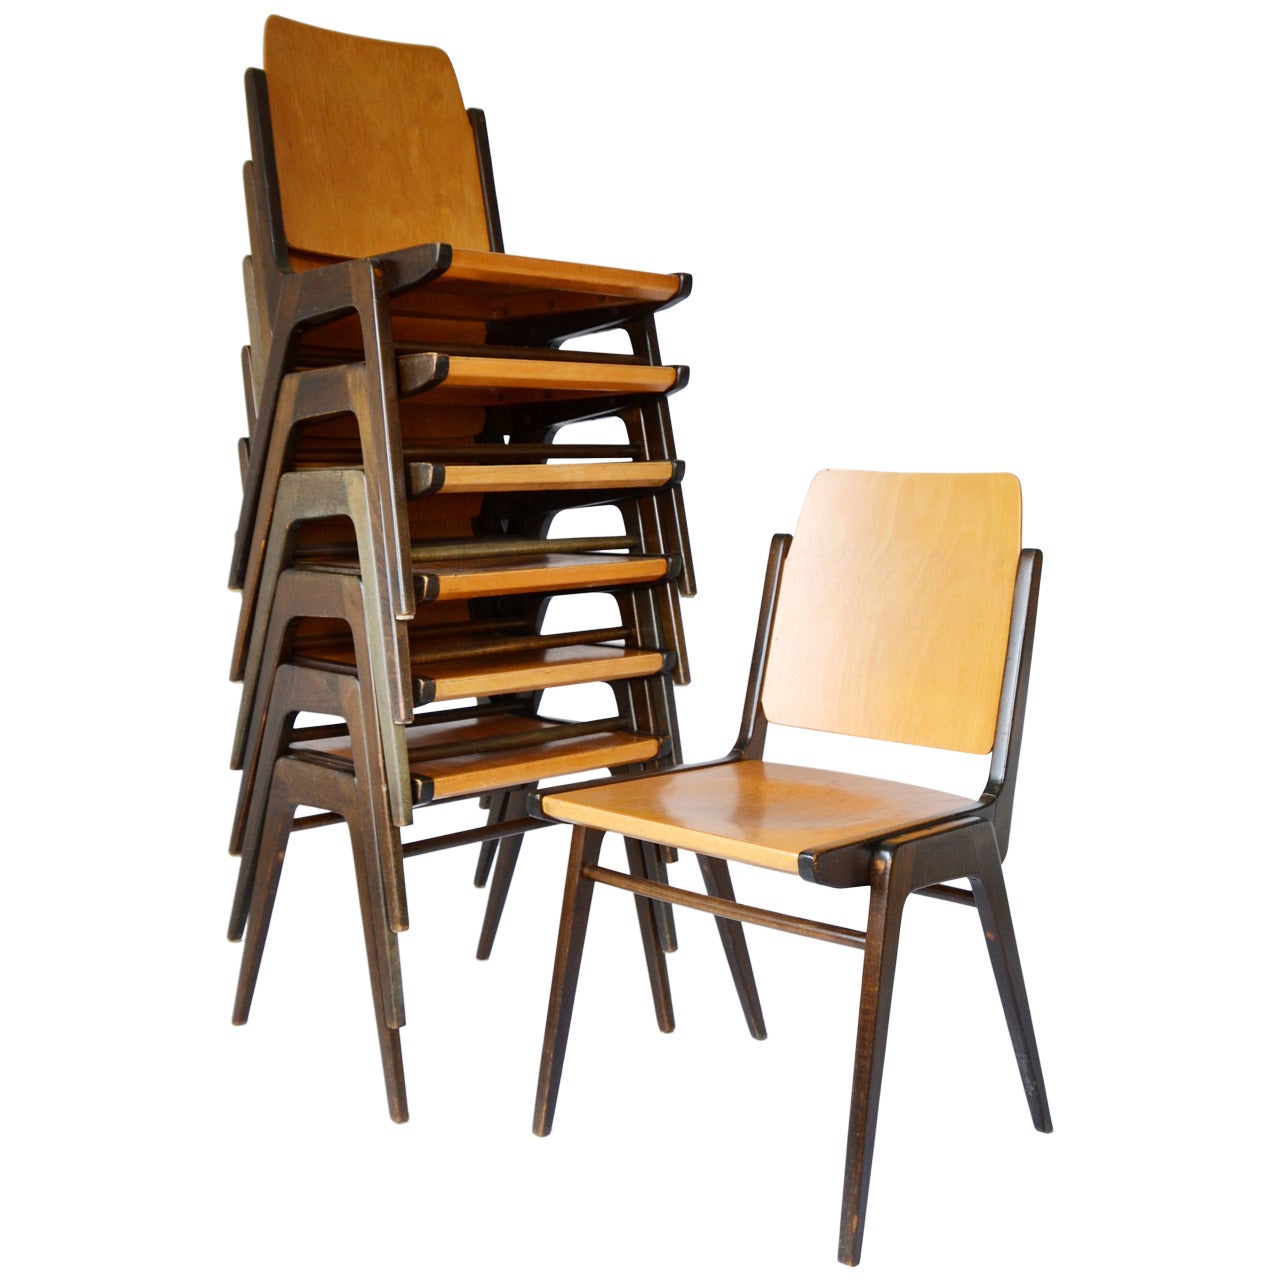 Une des douze chaises empilables bicolores conçues par l'architecte autrichien Franz Schuster et fabriquées par Wiesner-Hager au milieu du siècle, vers 1960 (fin des années 1950 ou début des années 1960).
Cette chaise a été conçue par Franz Schuster